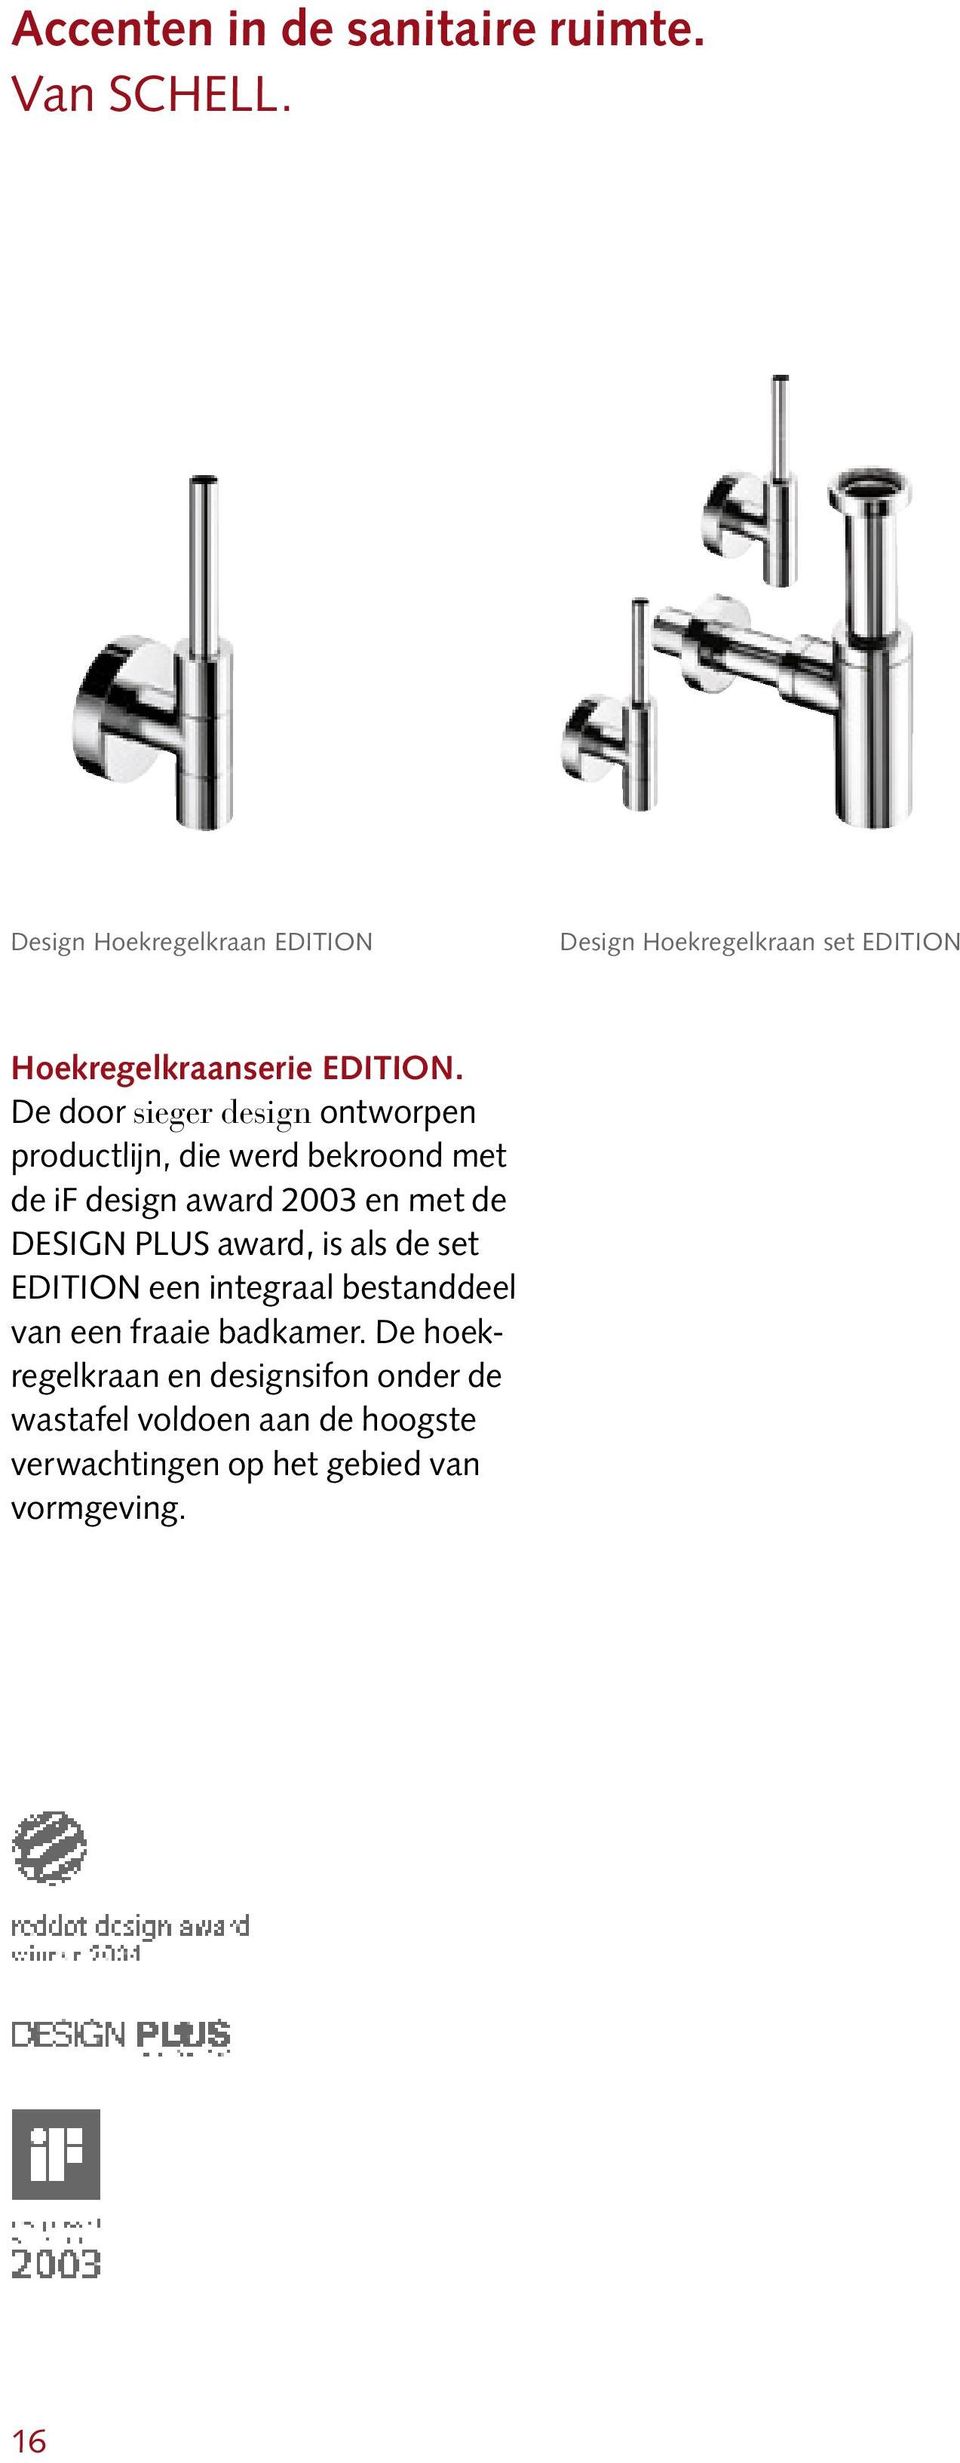 De door sieger design ontworpen productlijn, die werd bekroond met de if design award 2003 en met de DESIGN PLUS